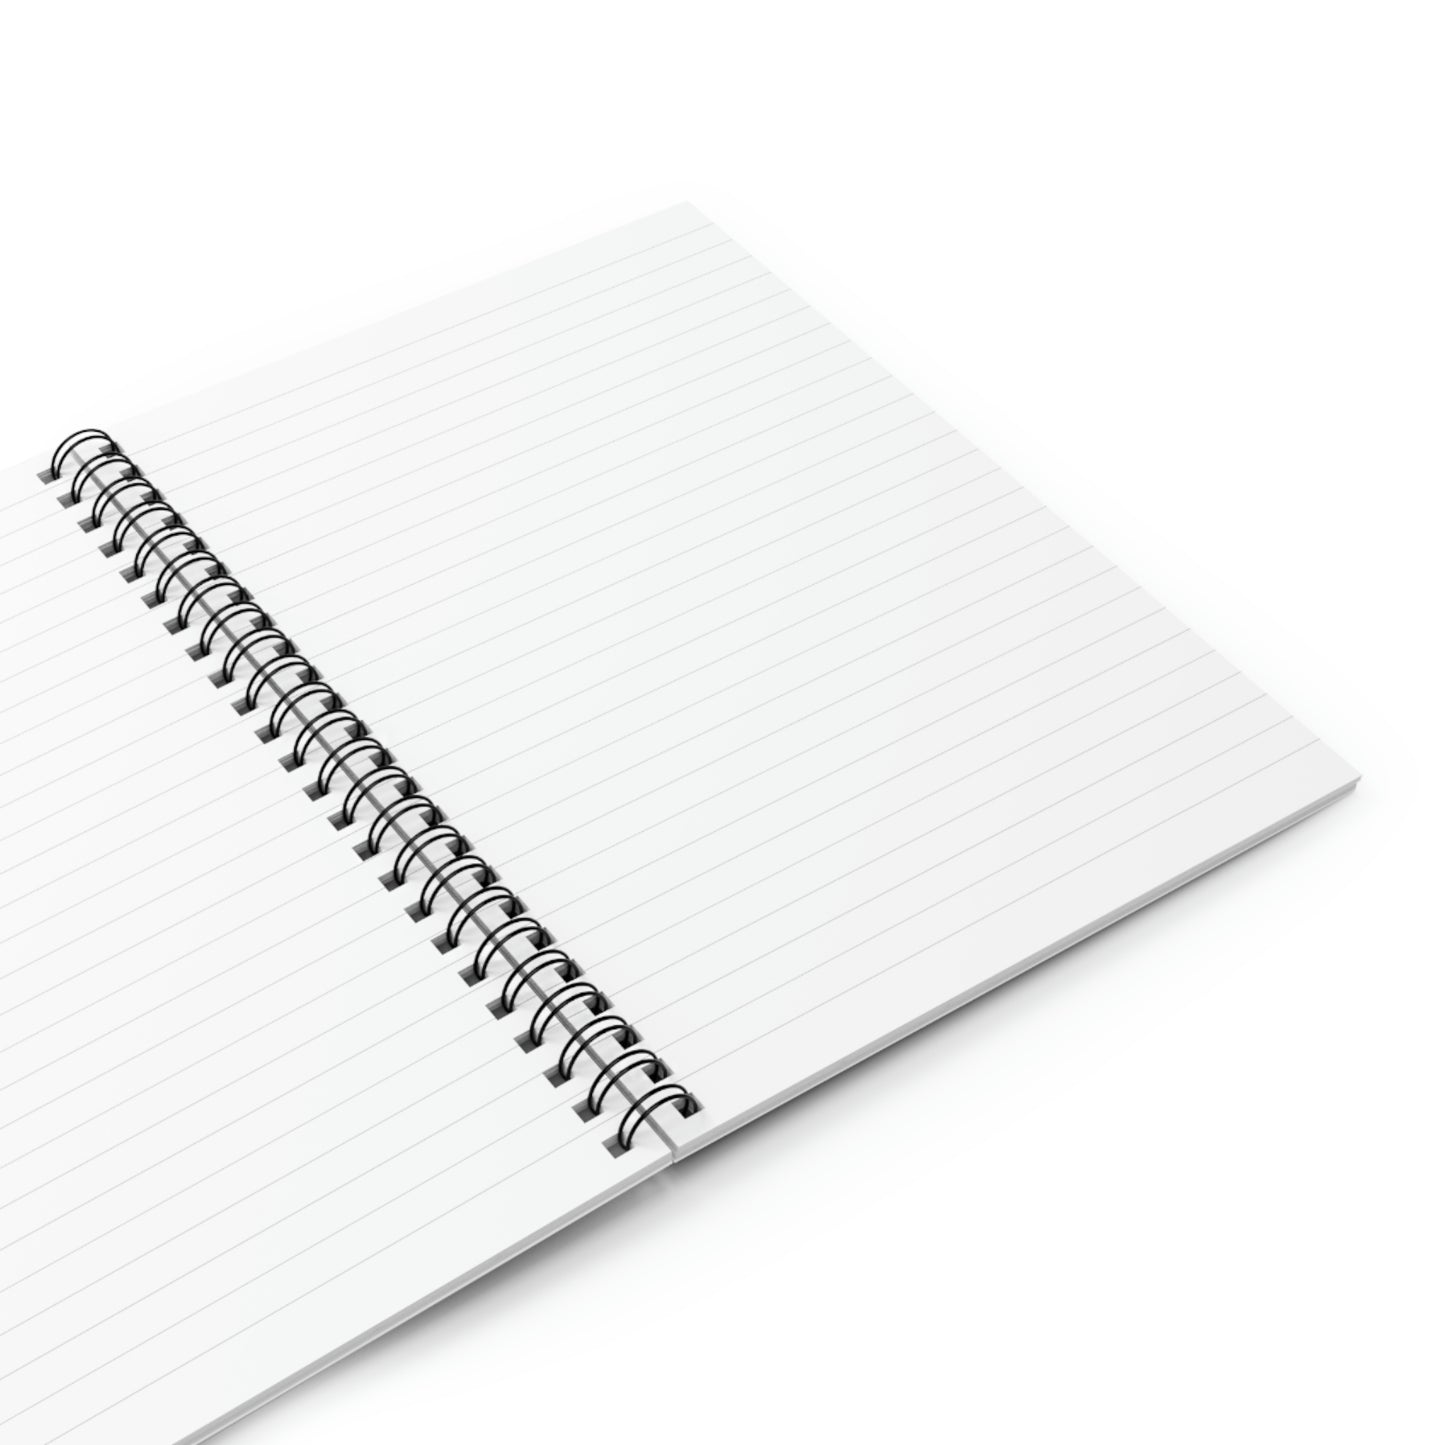 Pet Peeves - Spiral Notebook